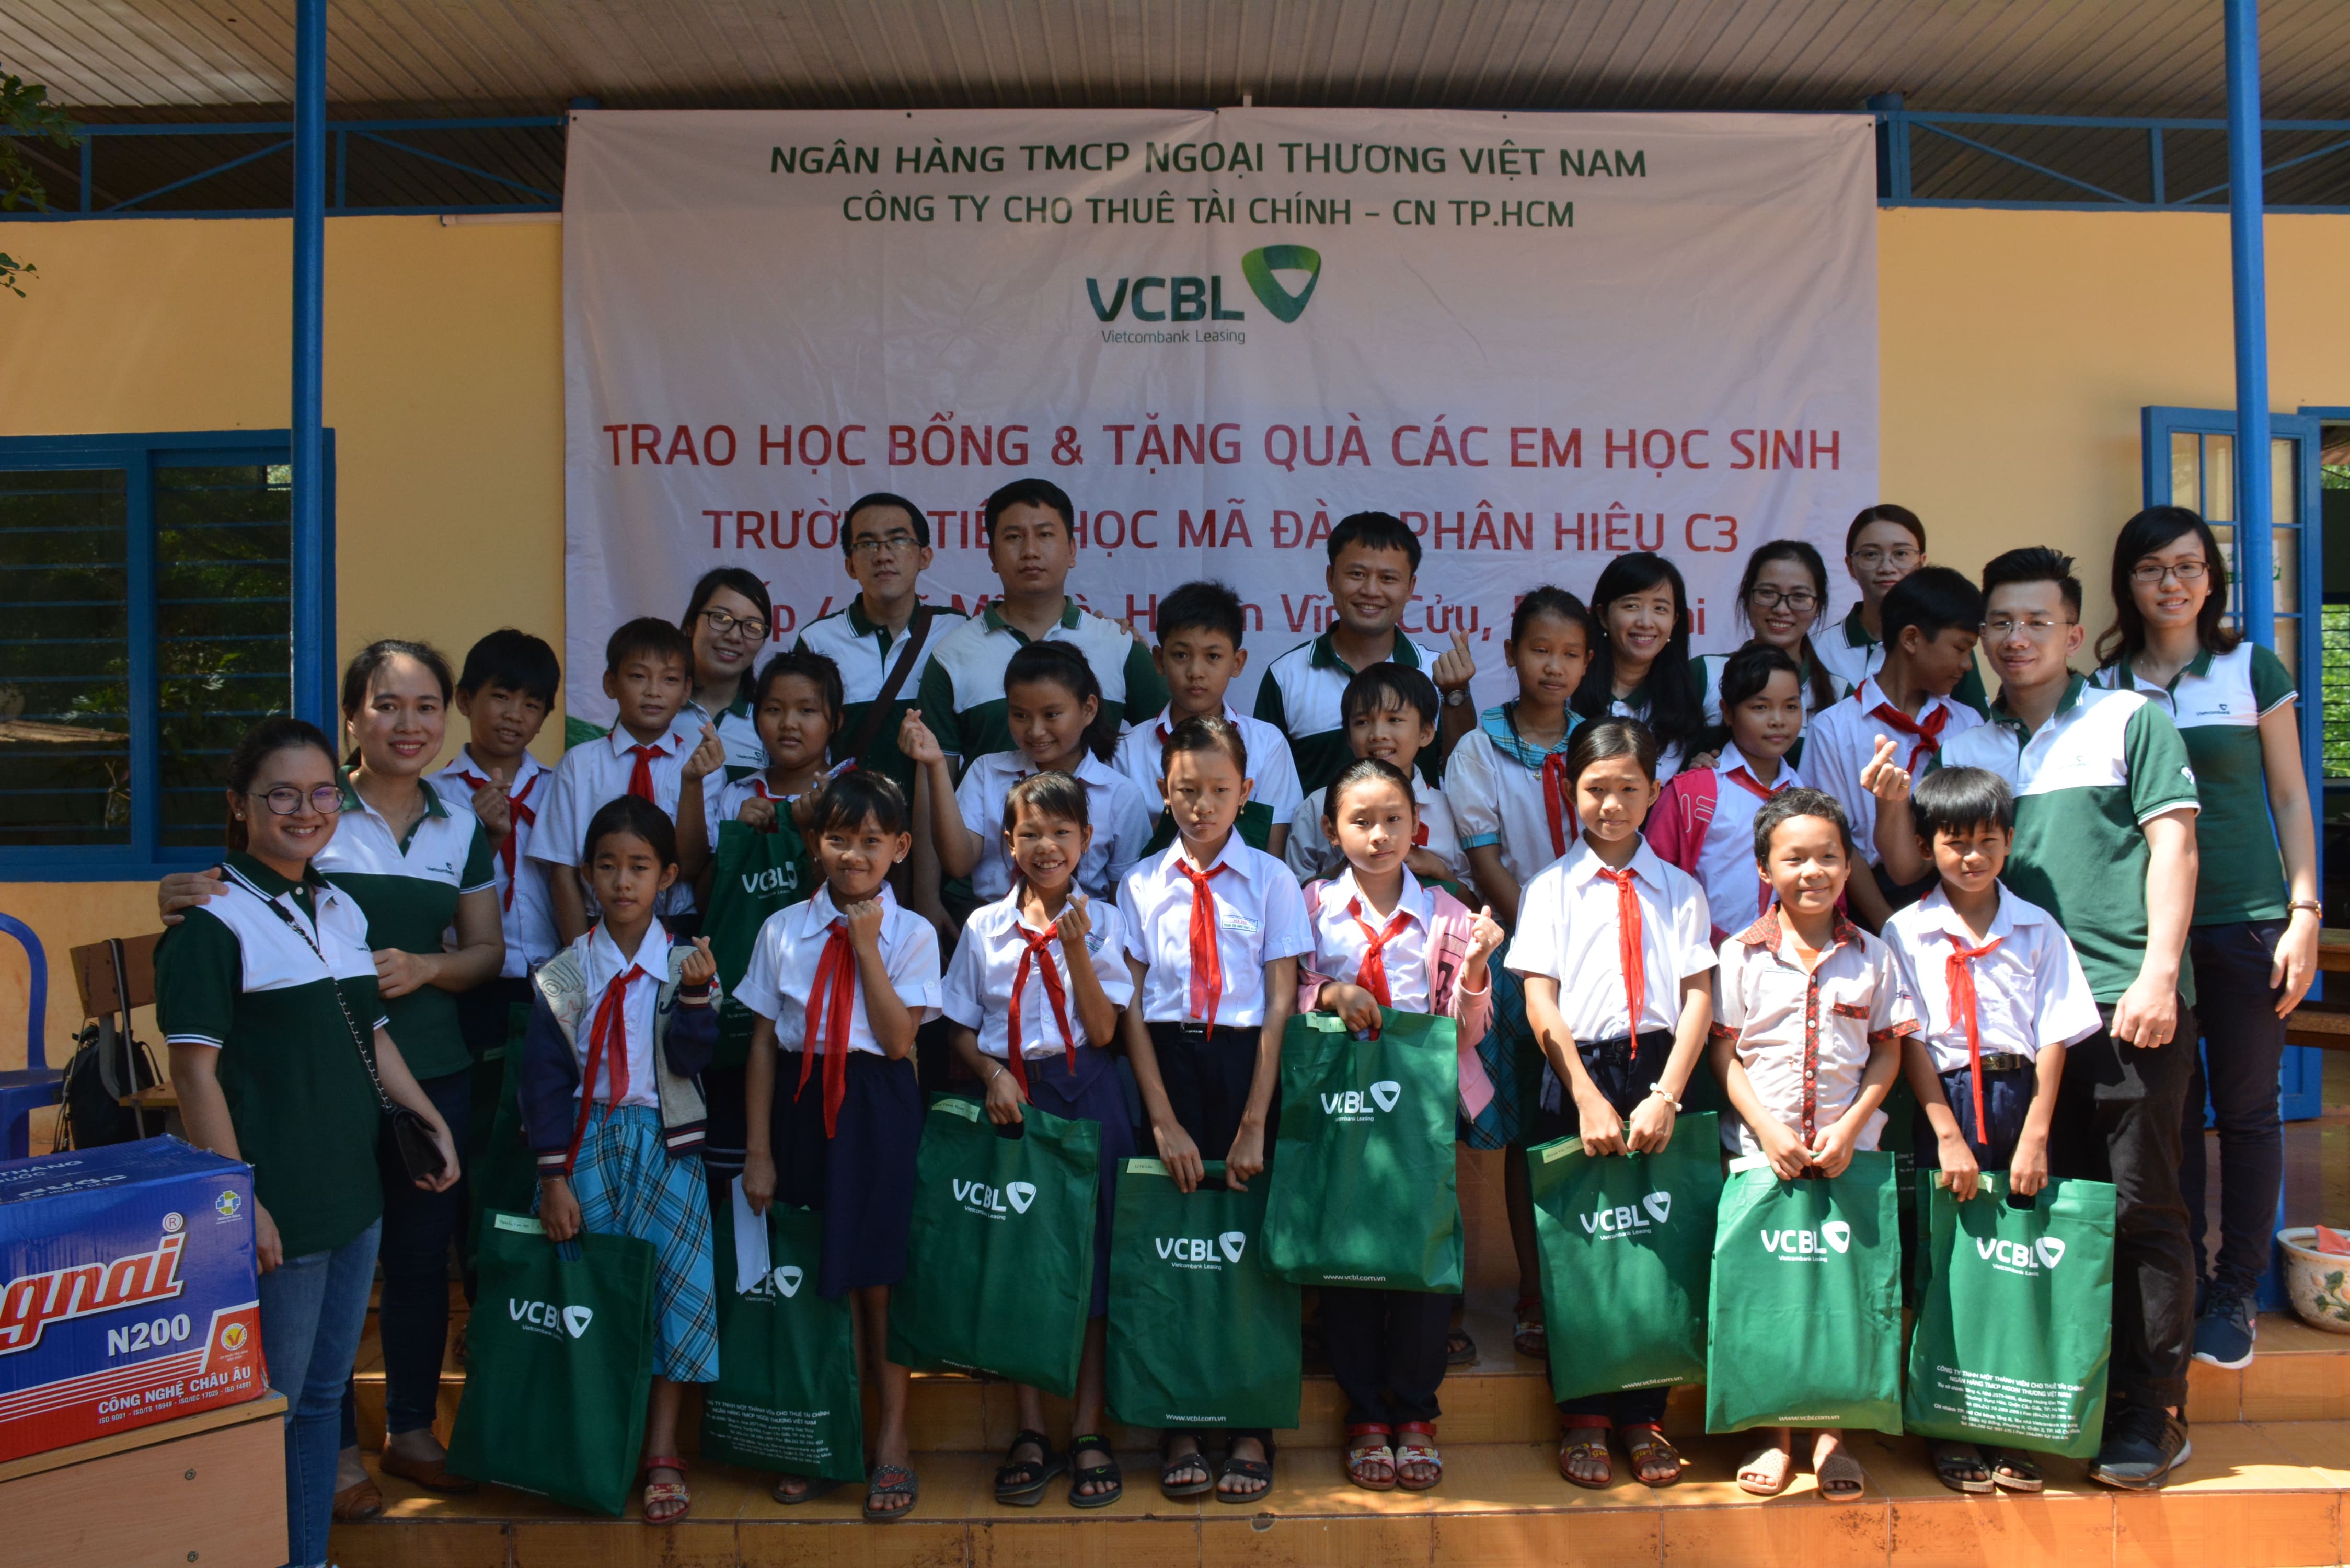 Đoàn thanh niên VCBL thăm và tặng quà Trường tiểu học Mã Đà – phân hiệu C3